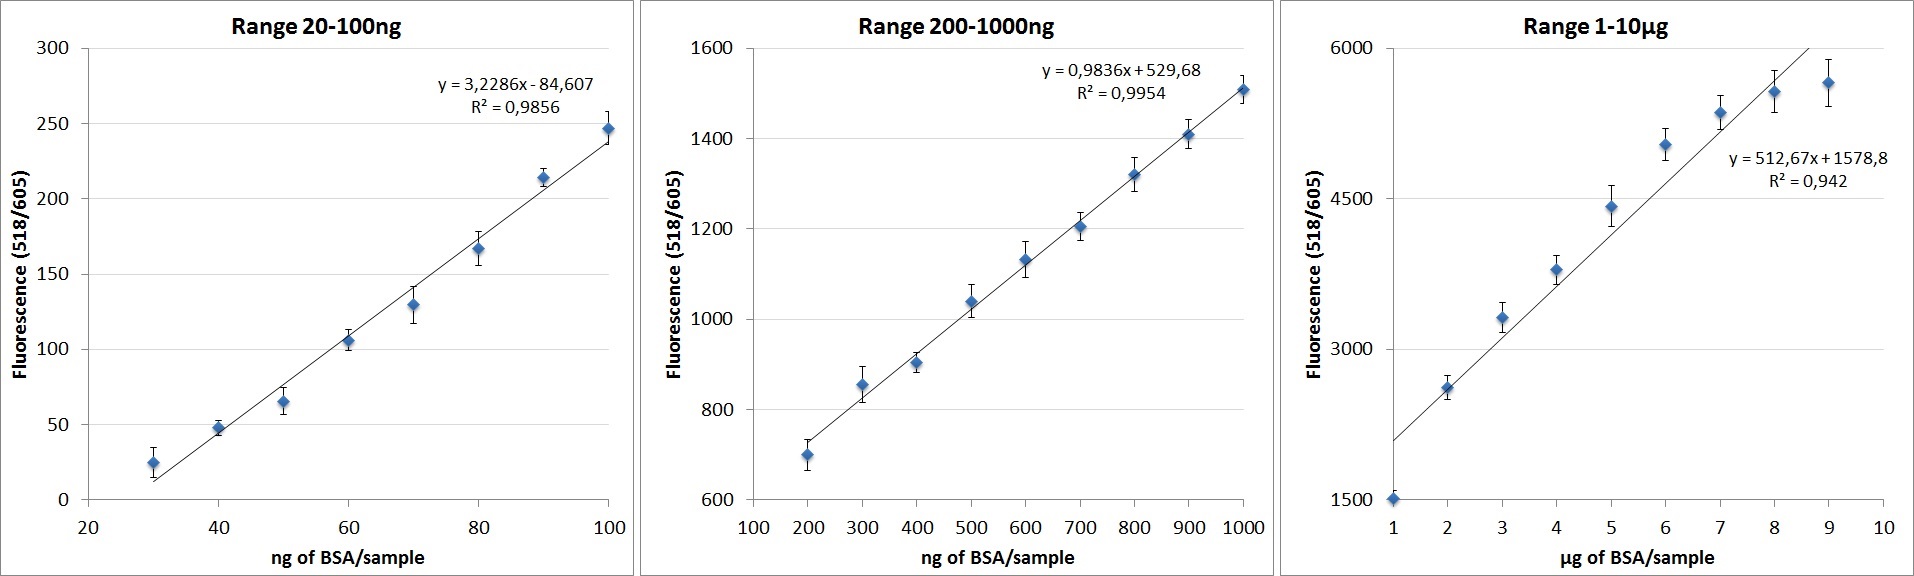 本タンパク質／ペプチド蛍光定量キットによる検出範囲